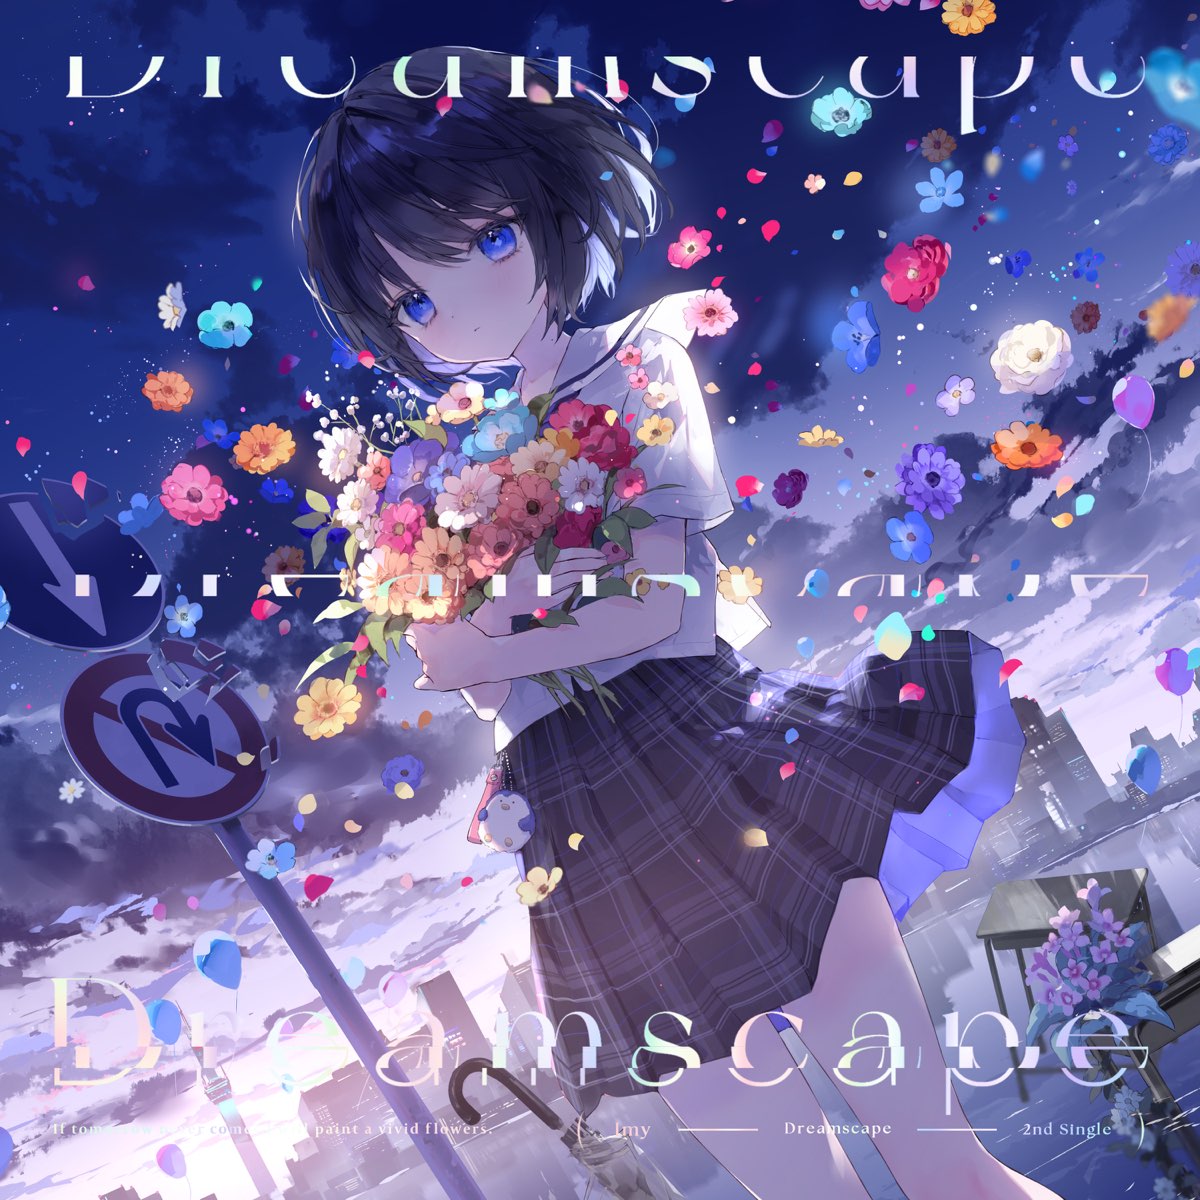 Dreamscape (feat. 藍月なくる) - Single - Imyのアルバム - Apple Music